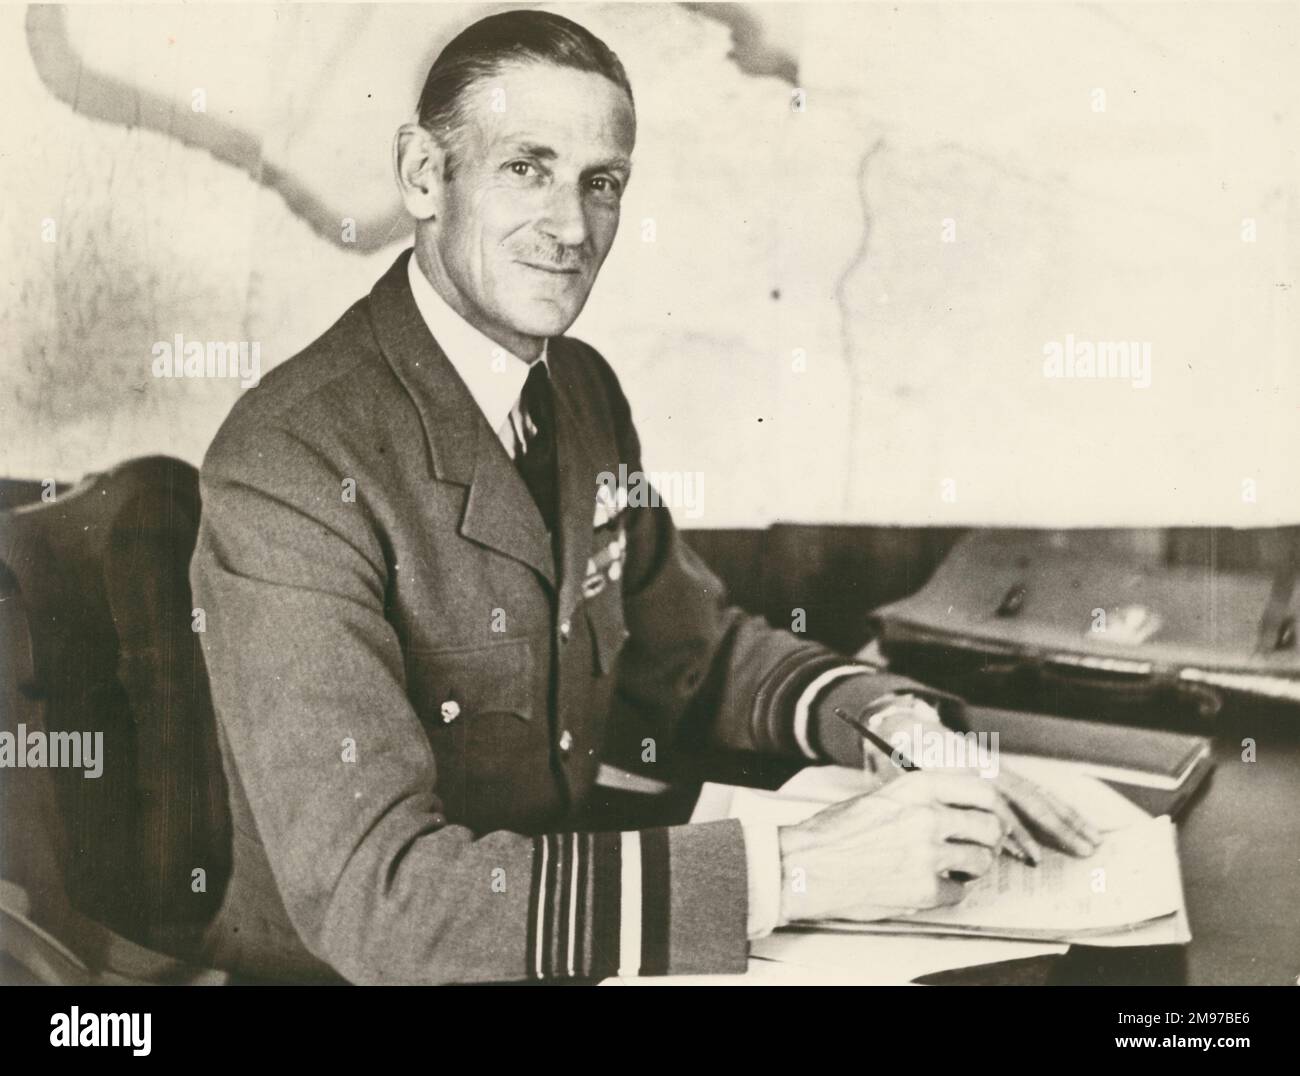 Air Chief Marshal Sir Keith Park, 1892-1975. Stock Photo